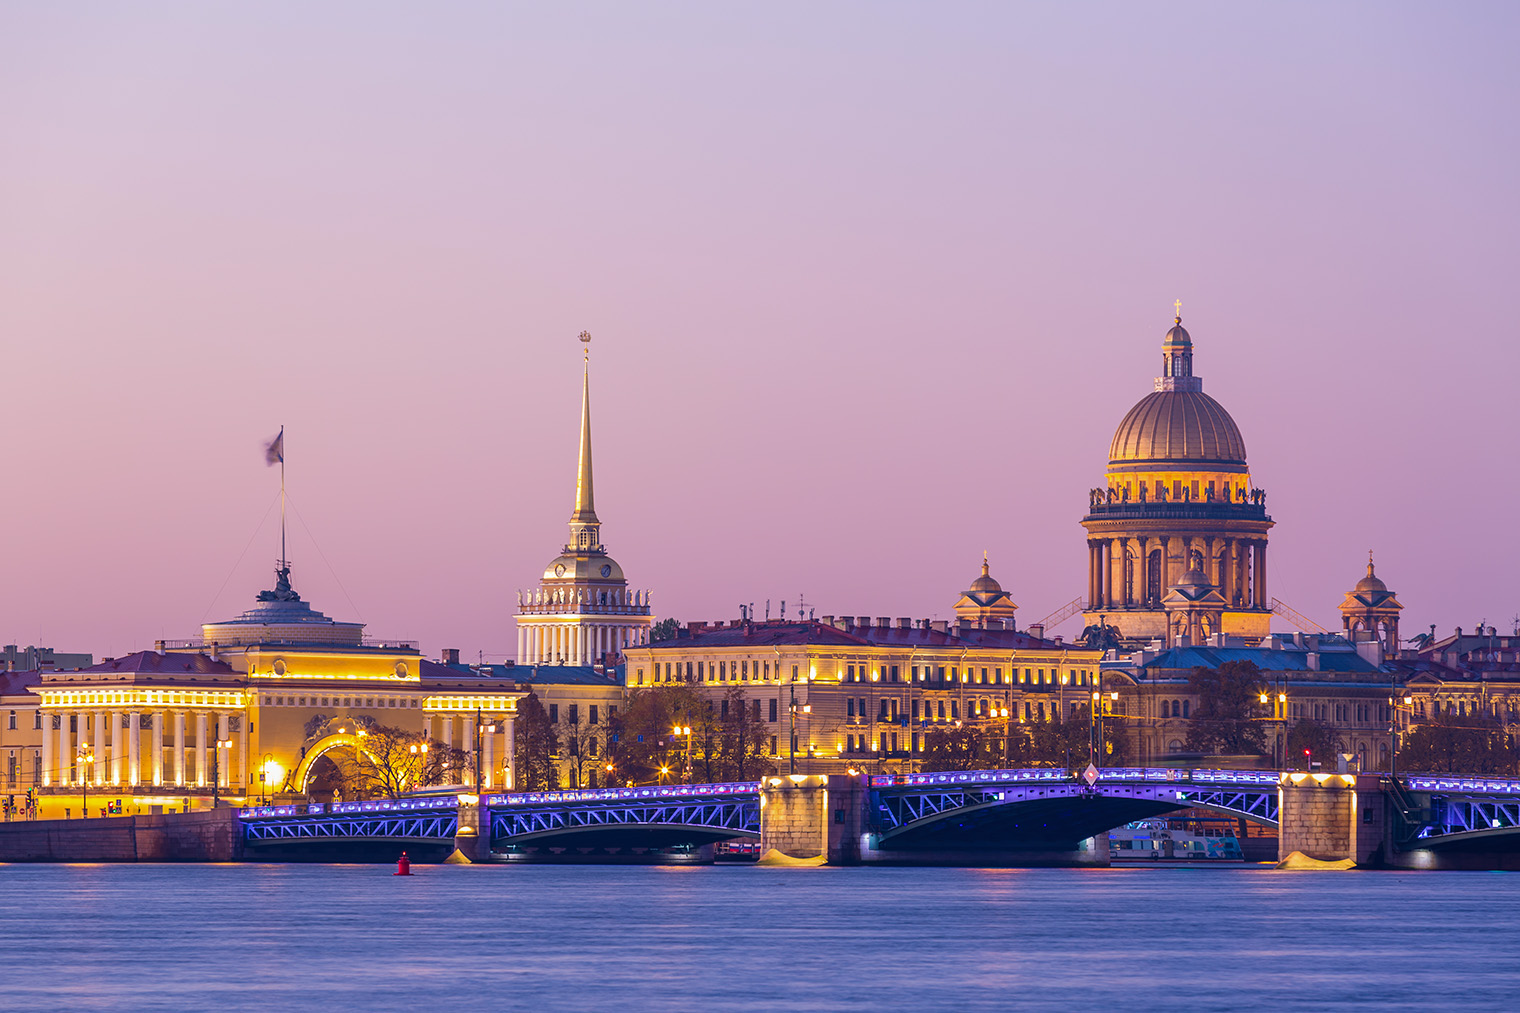 Дворцовый мост в Санкт-Петербурге фото